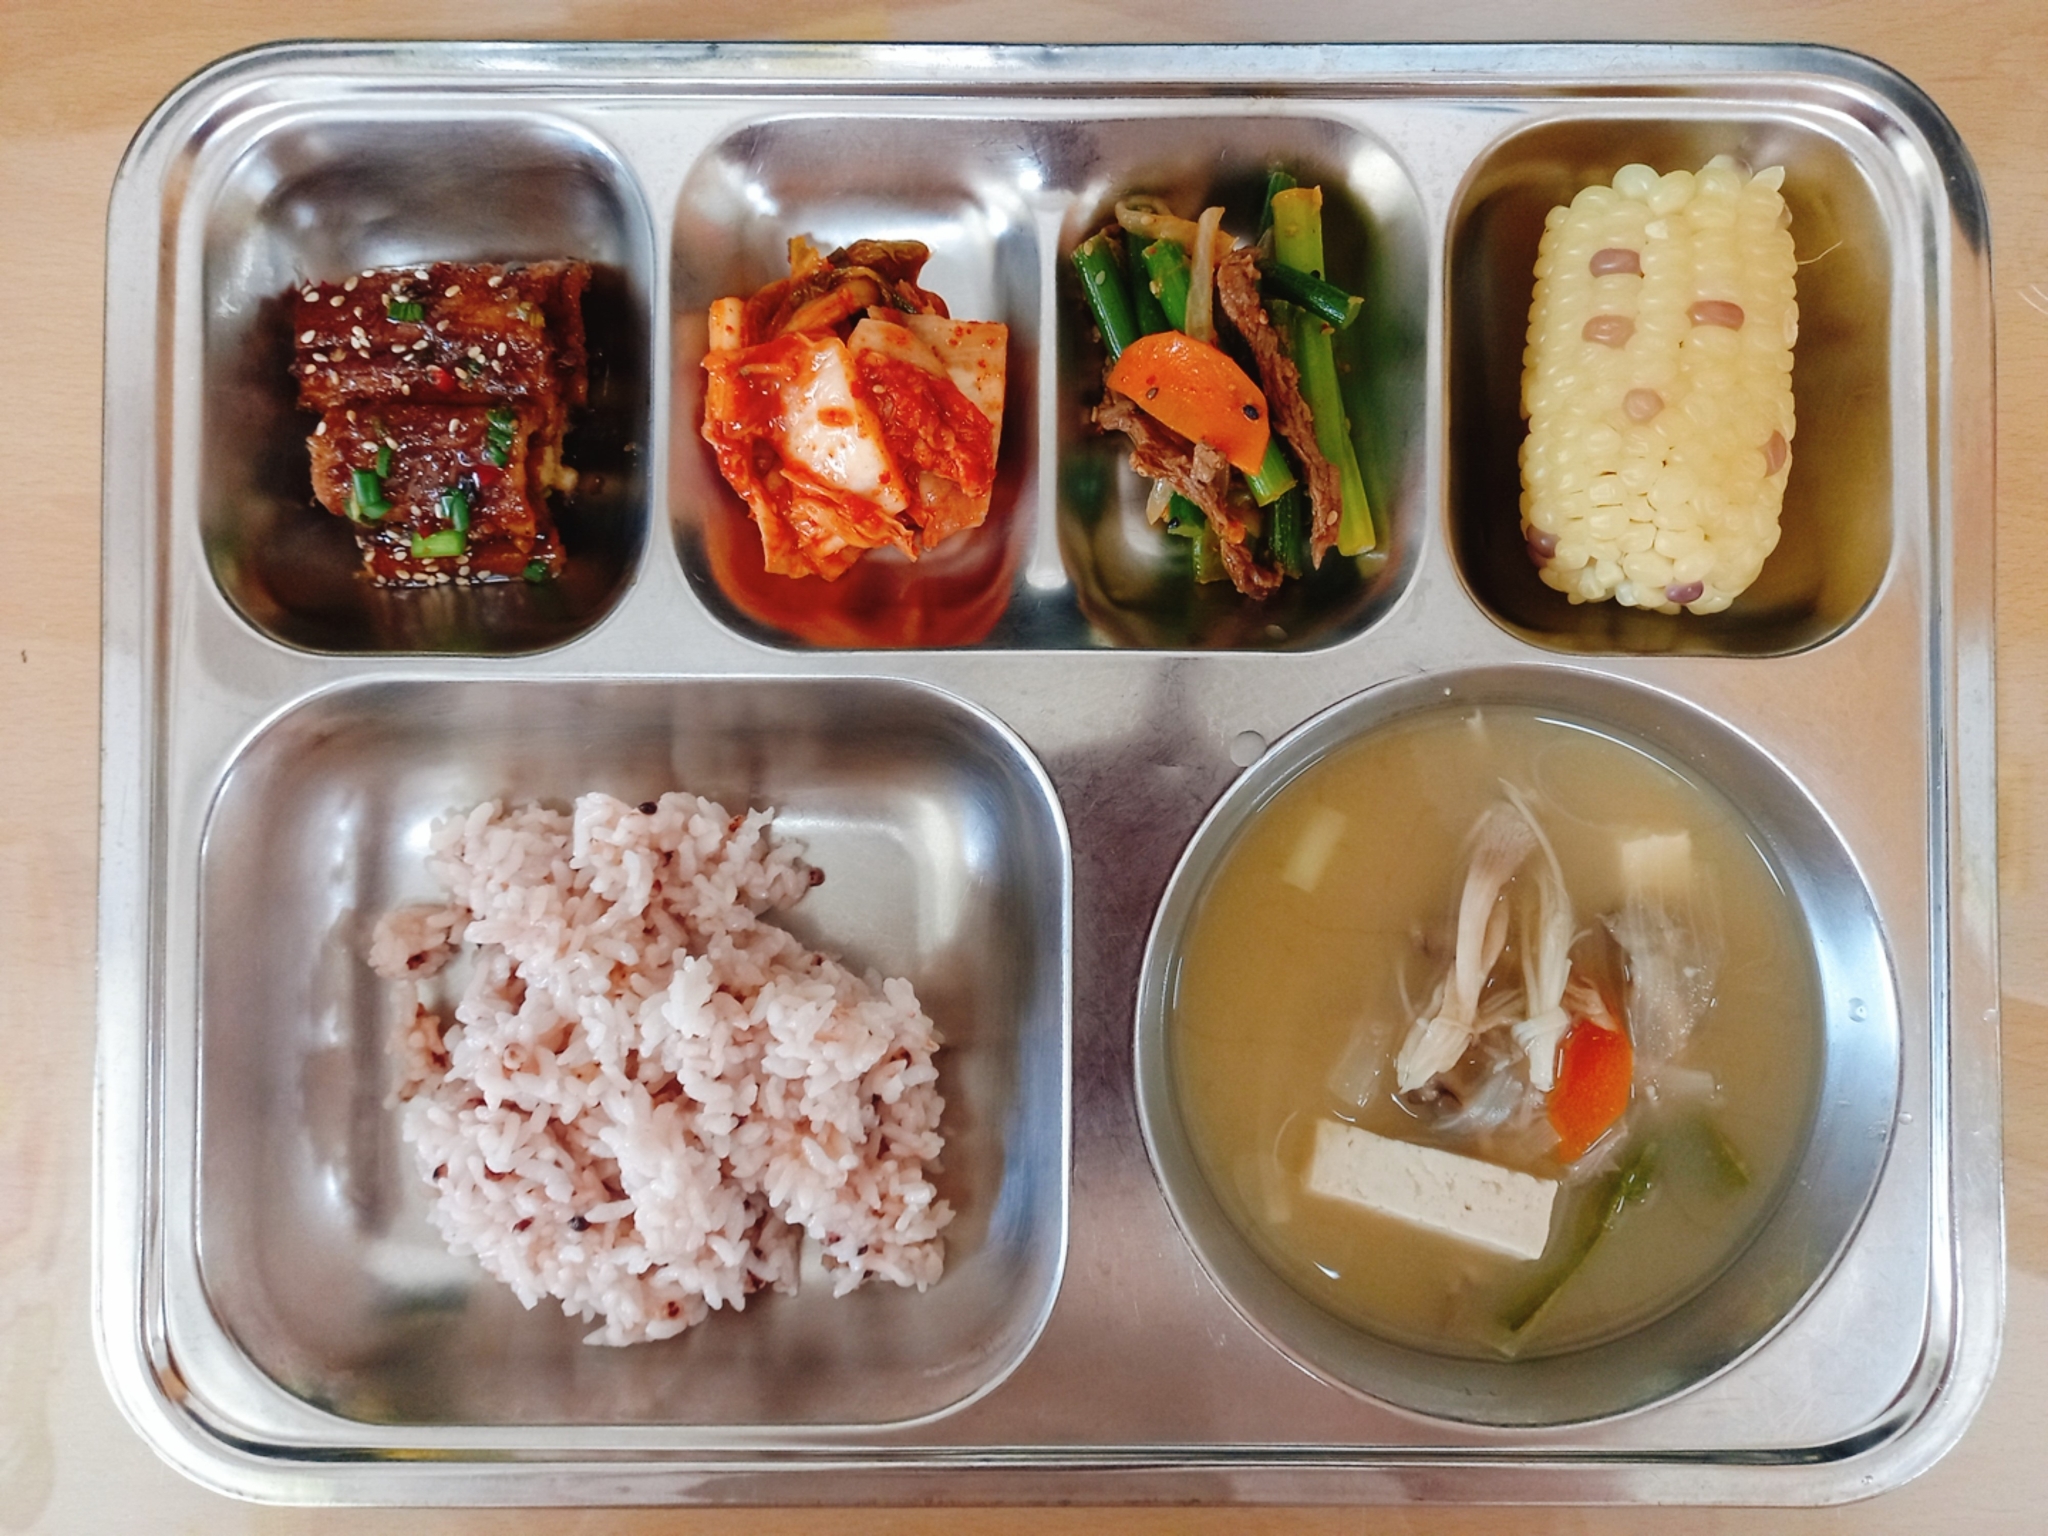 20.7.30 친환경차수수밥,버섯미소된장국,장어데리야끼구이,쇠고기마늘종볶음,김치,찐옥수수